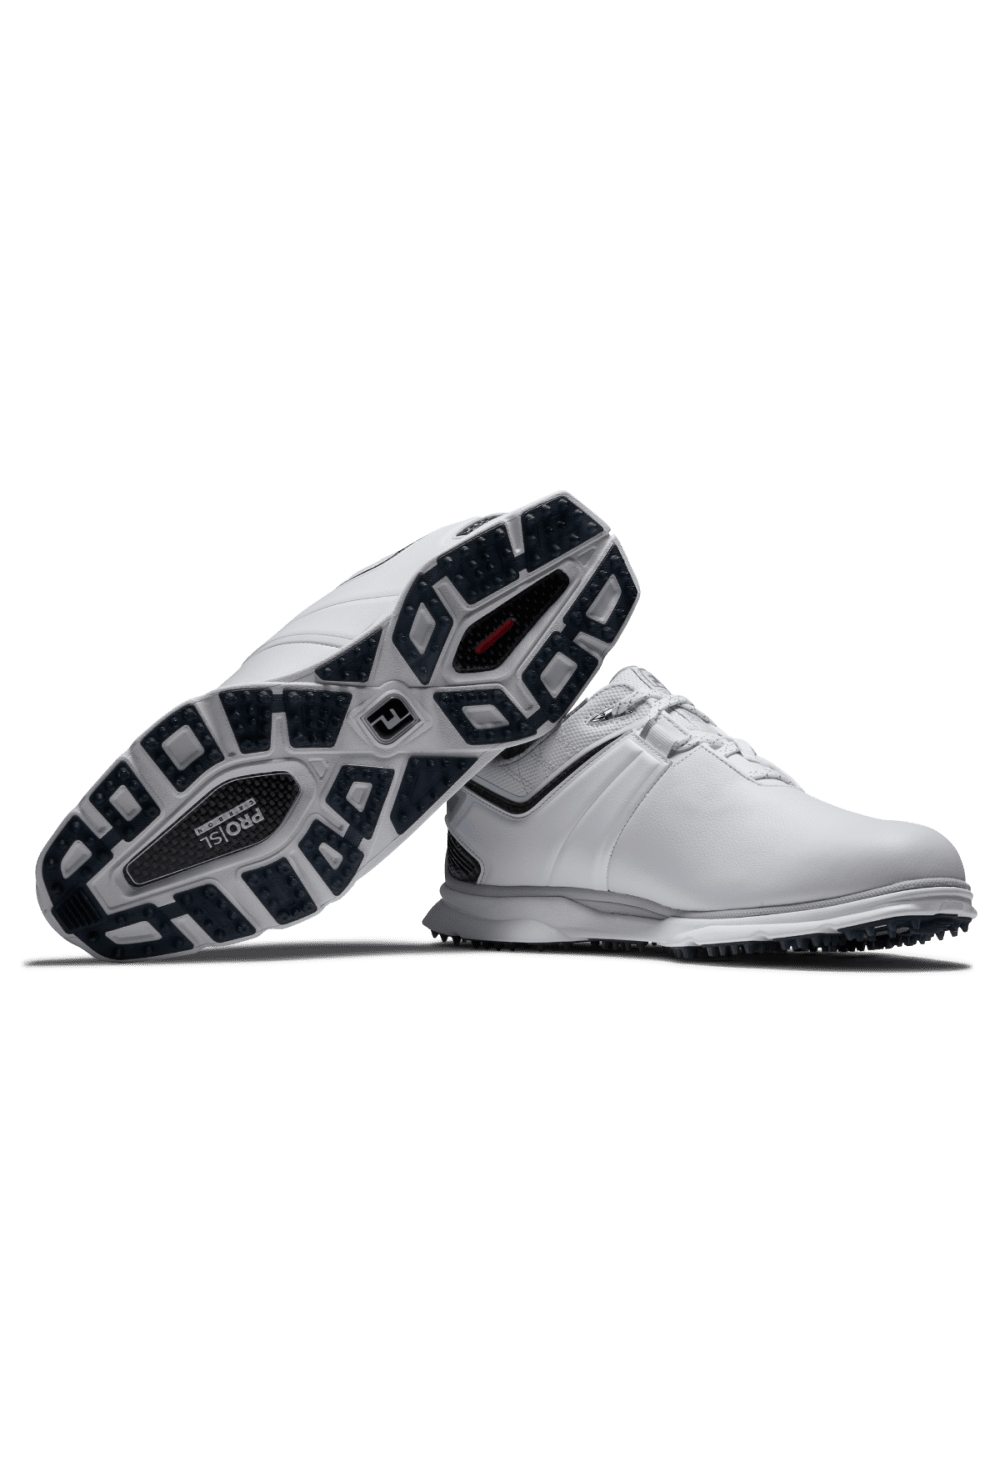 FootJoy Pro SL Carbon Golf Shoes 53079